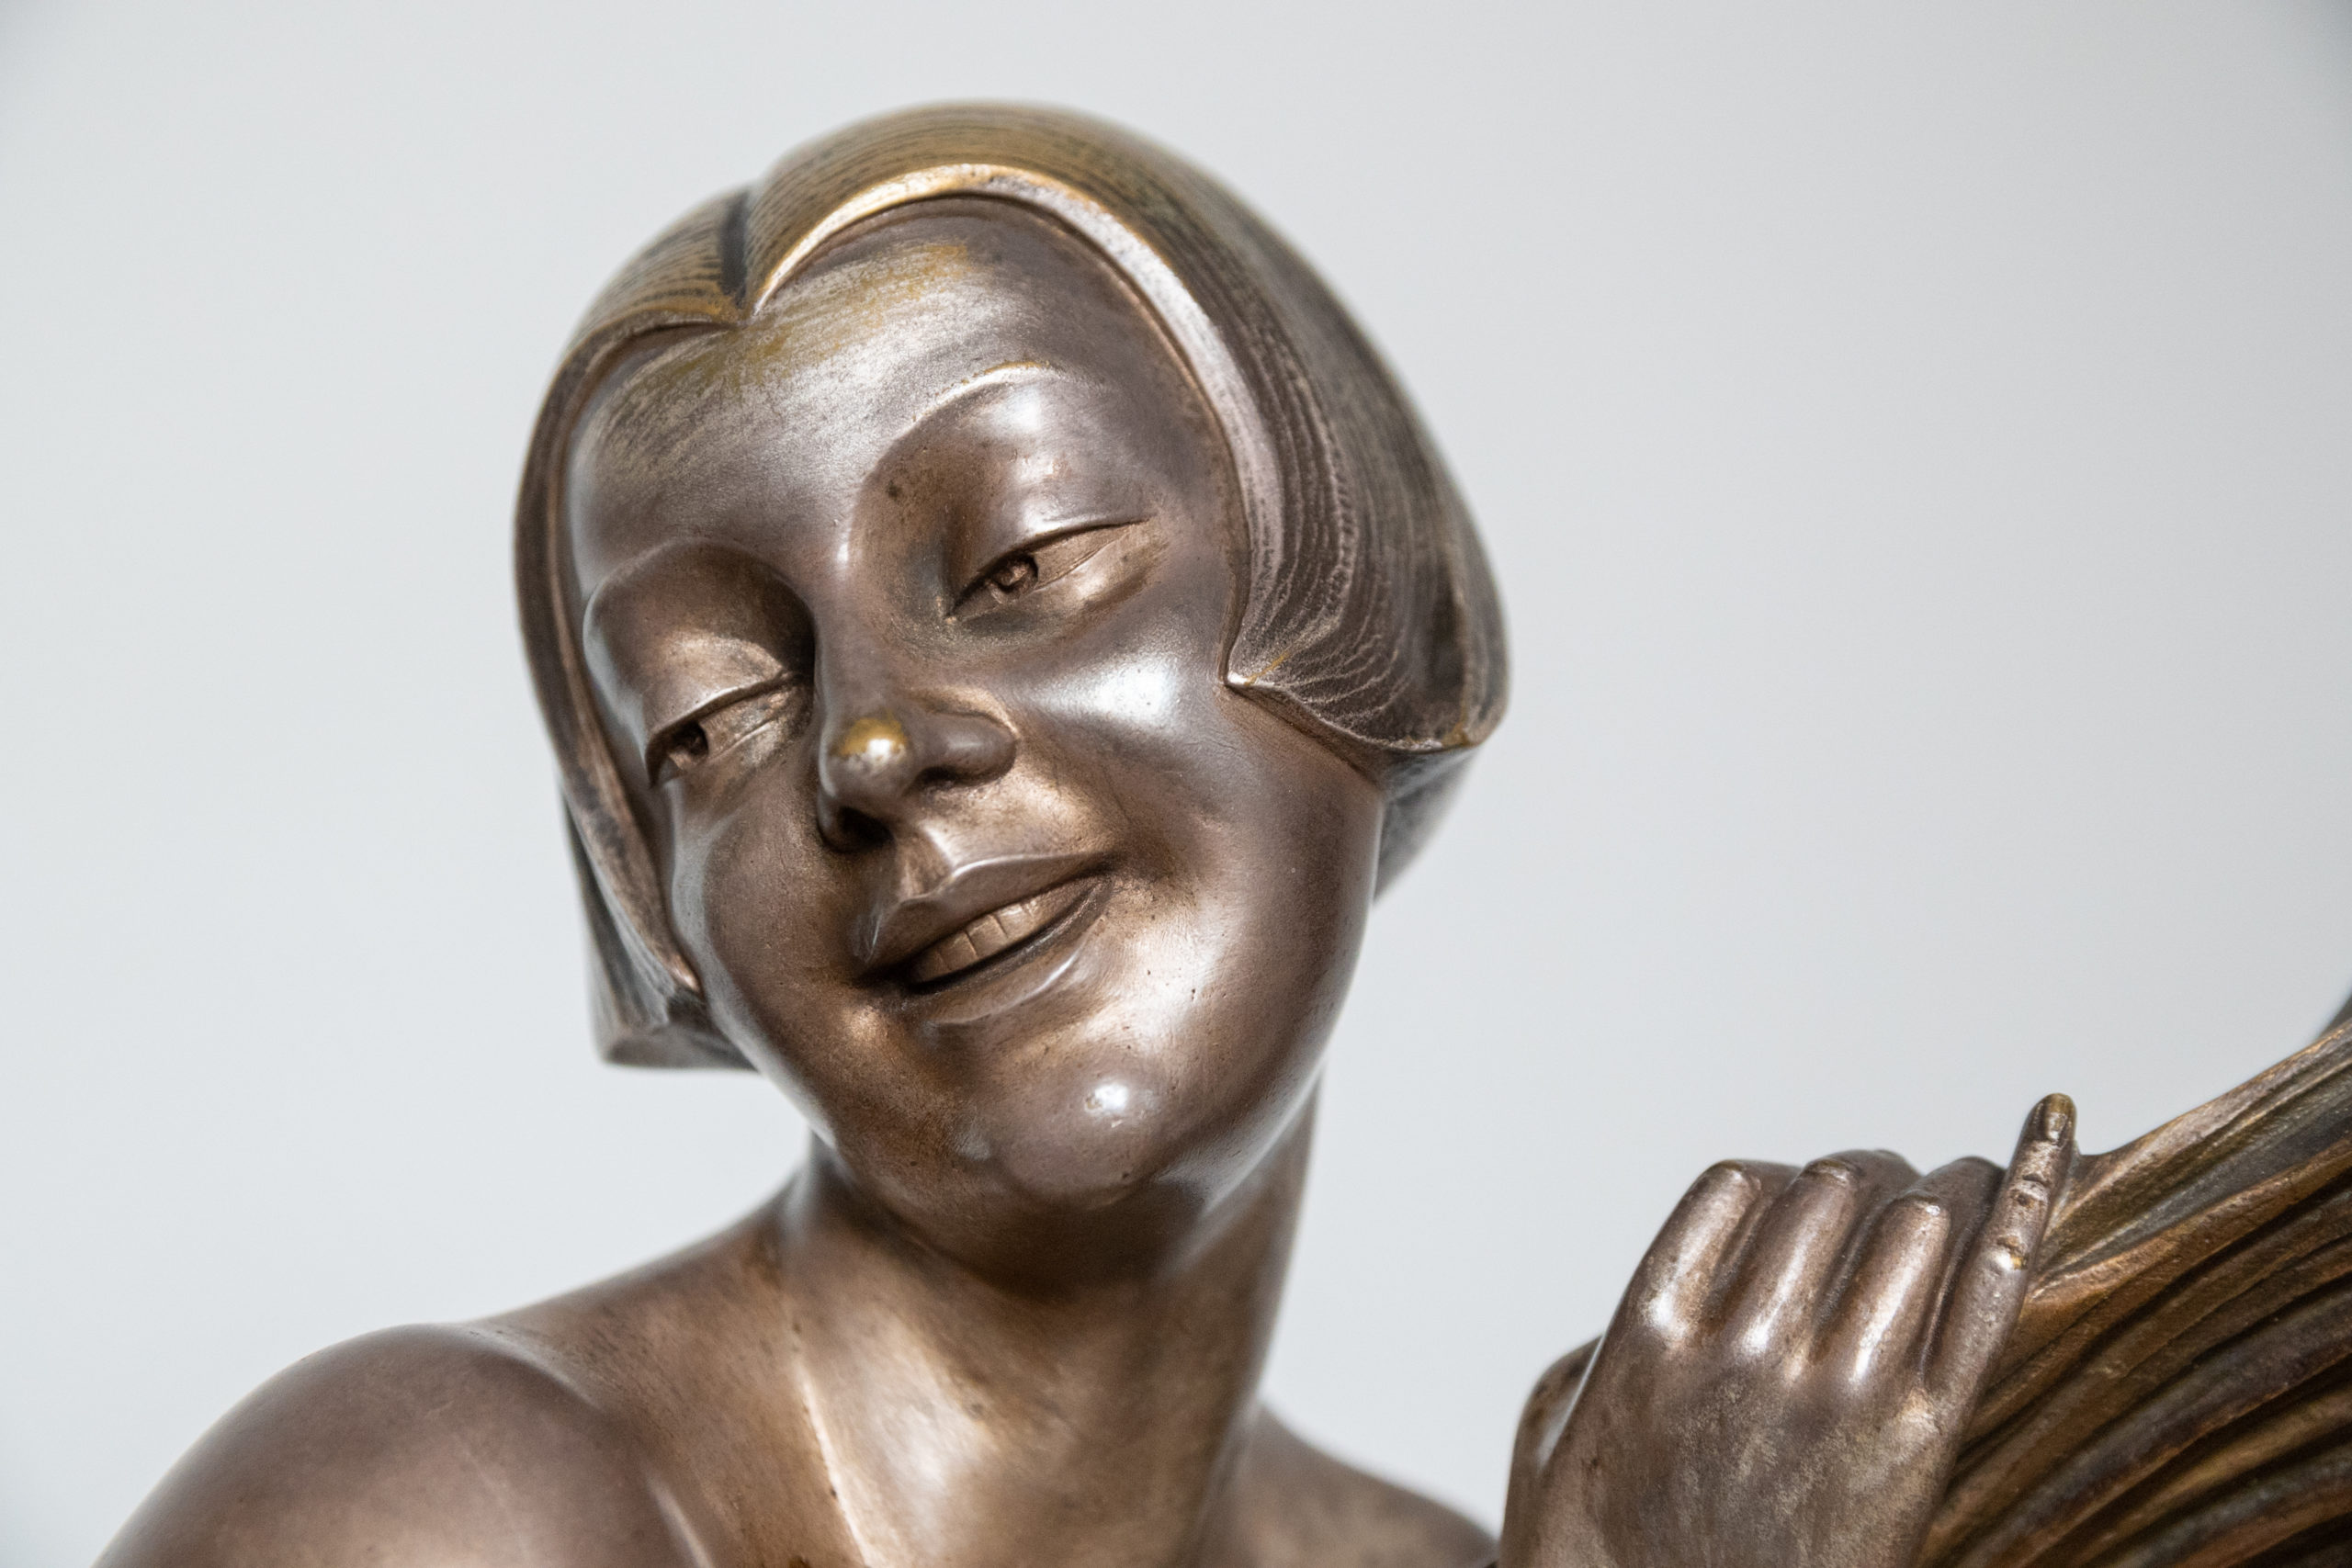 Armand-godard-sculpture-bronze-argenté-art-deco-XXe-france-aurore-morisse-affaire-conclue-antiquaire-liege-belgique2